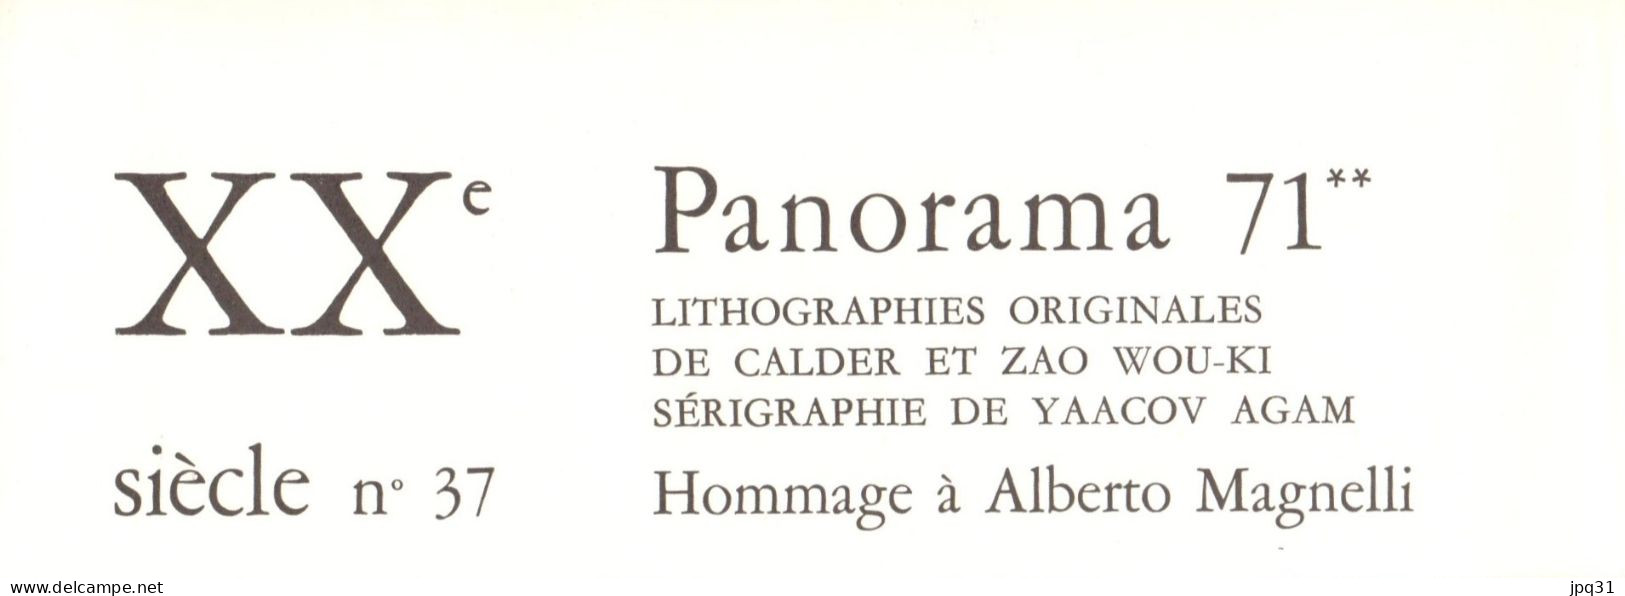 Cahiers d'art XXe Siècle no 36/37 - Panorama 71 - 1971